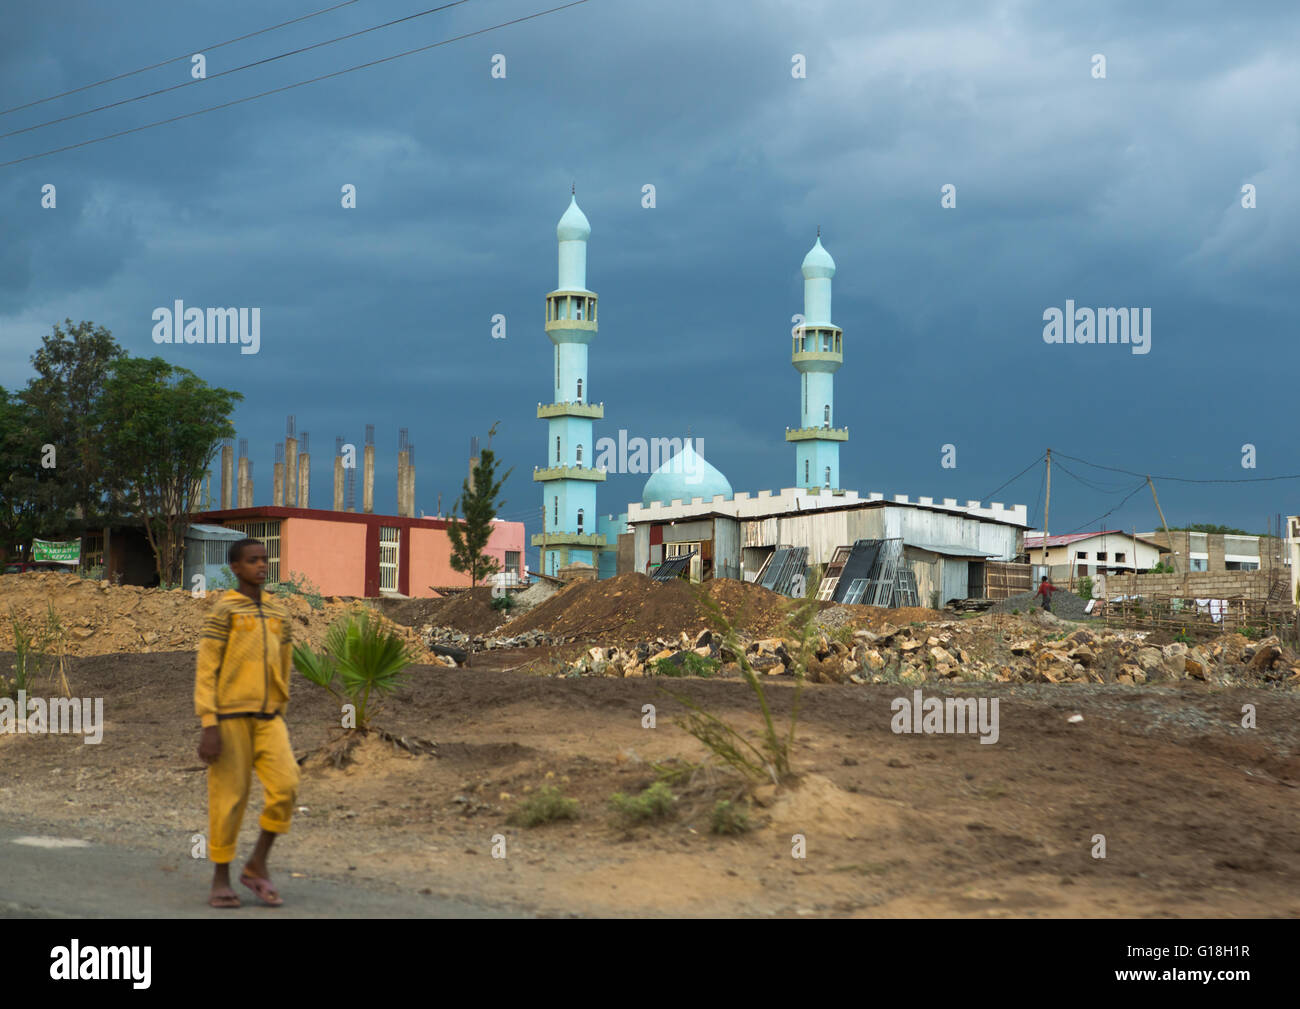 Blaue Moschee in einem Dorf, Kembata, Alaba Kuito, Äthiopien Stockfoto